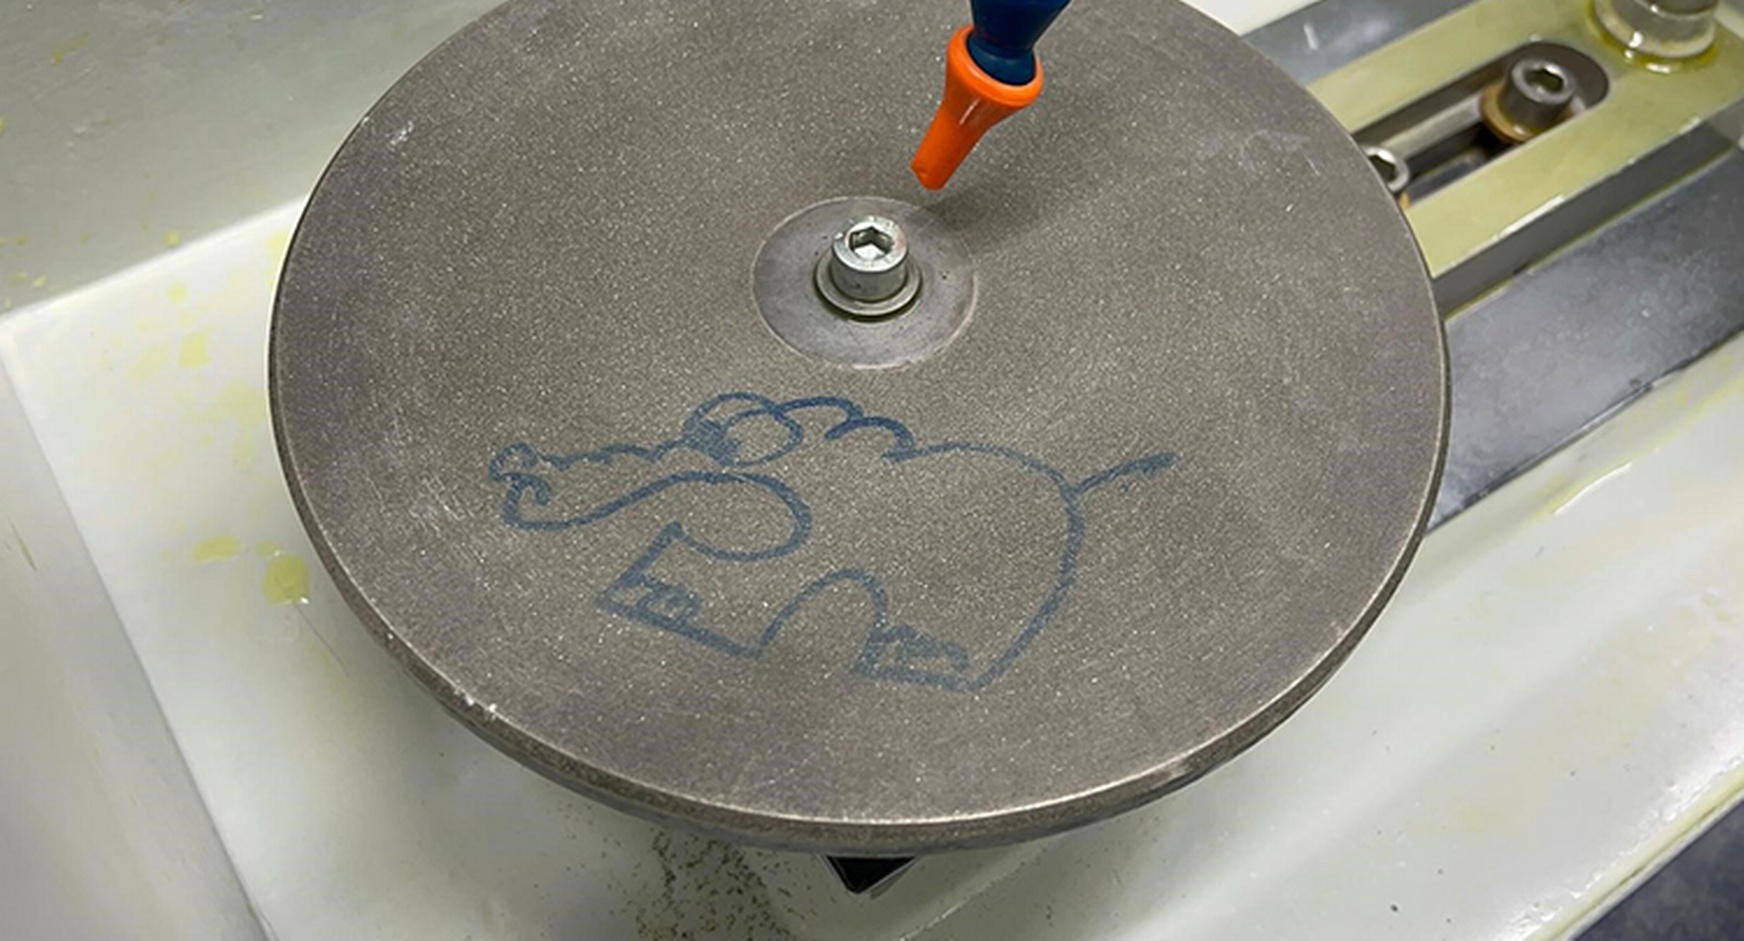 Detailansicht eines Schleifgeräts mit aufgemaltem Elefanten